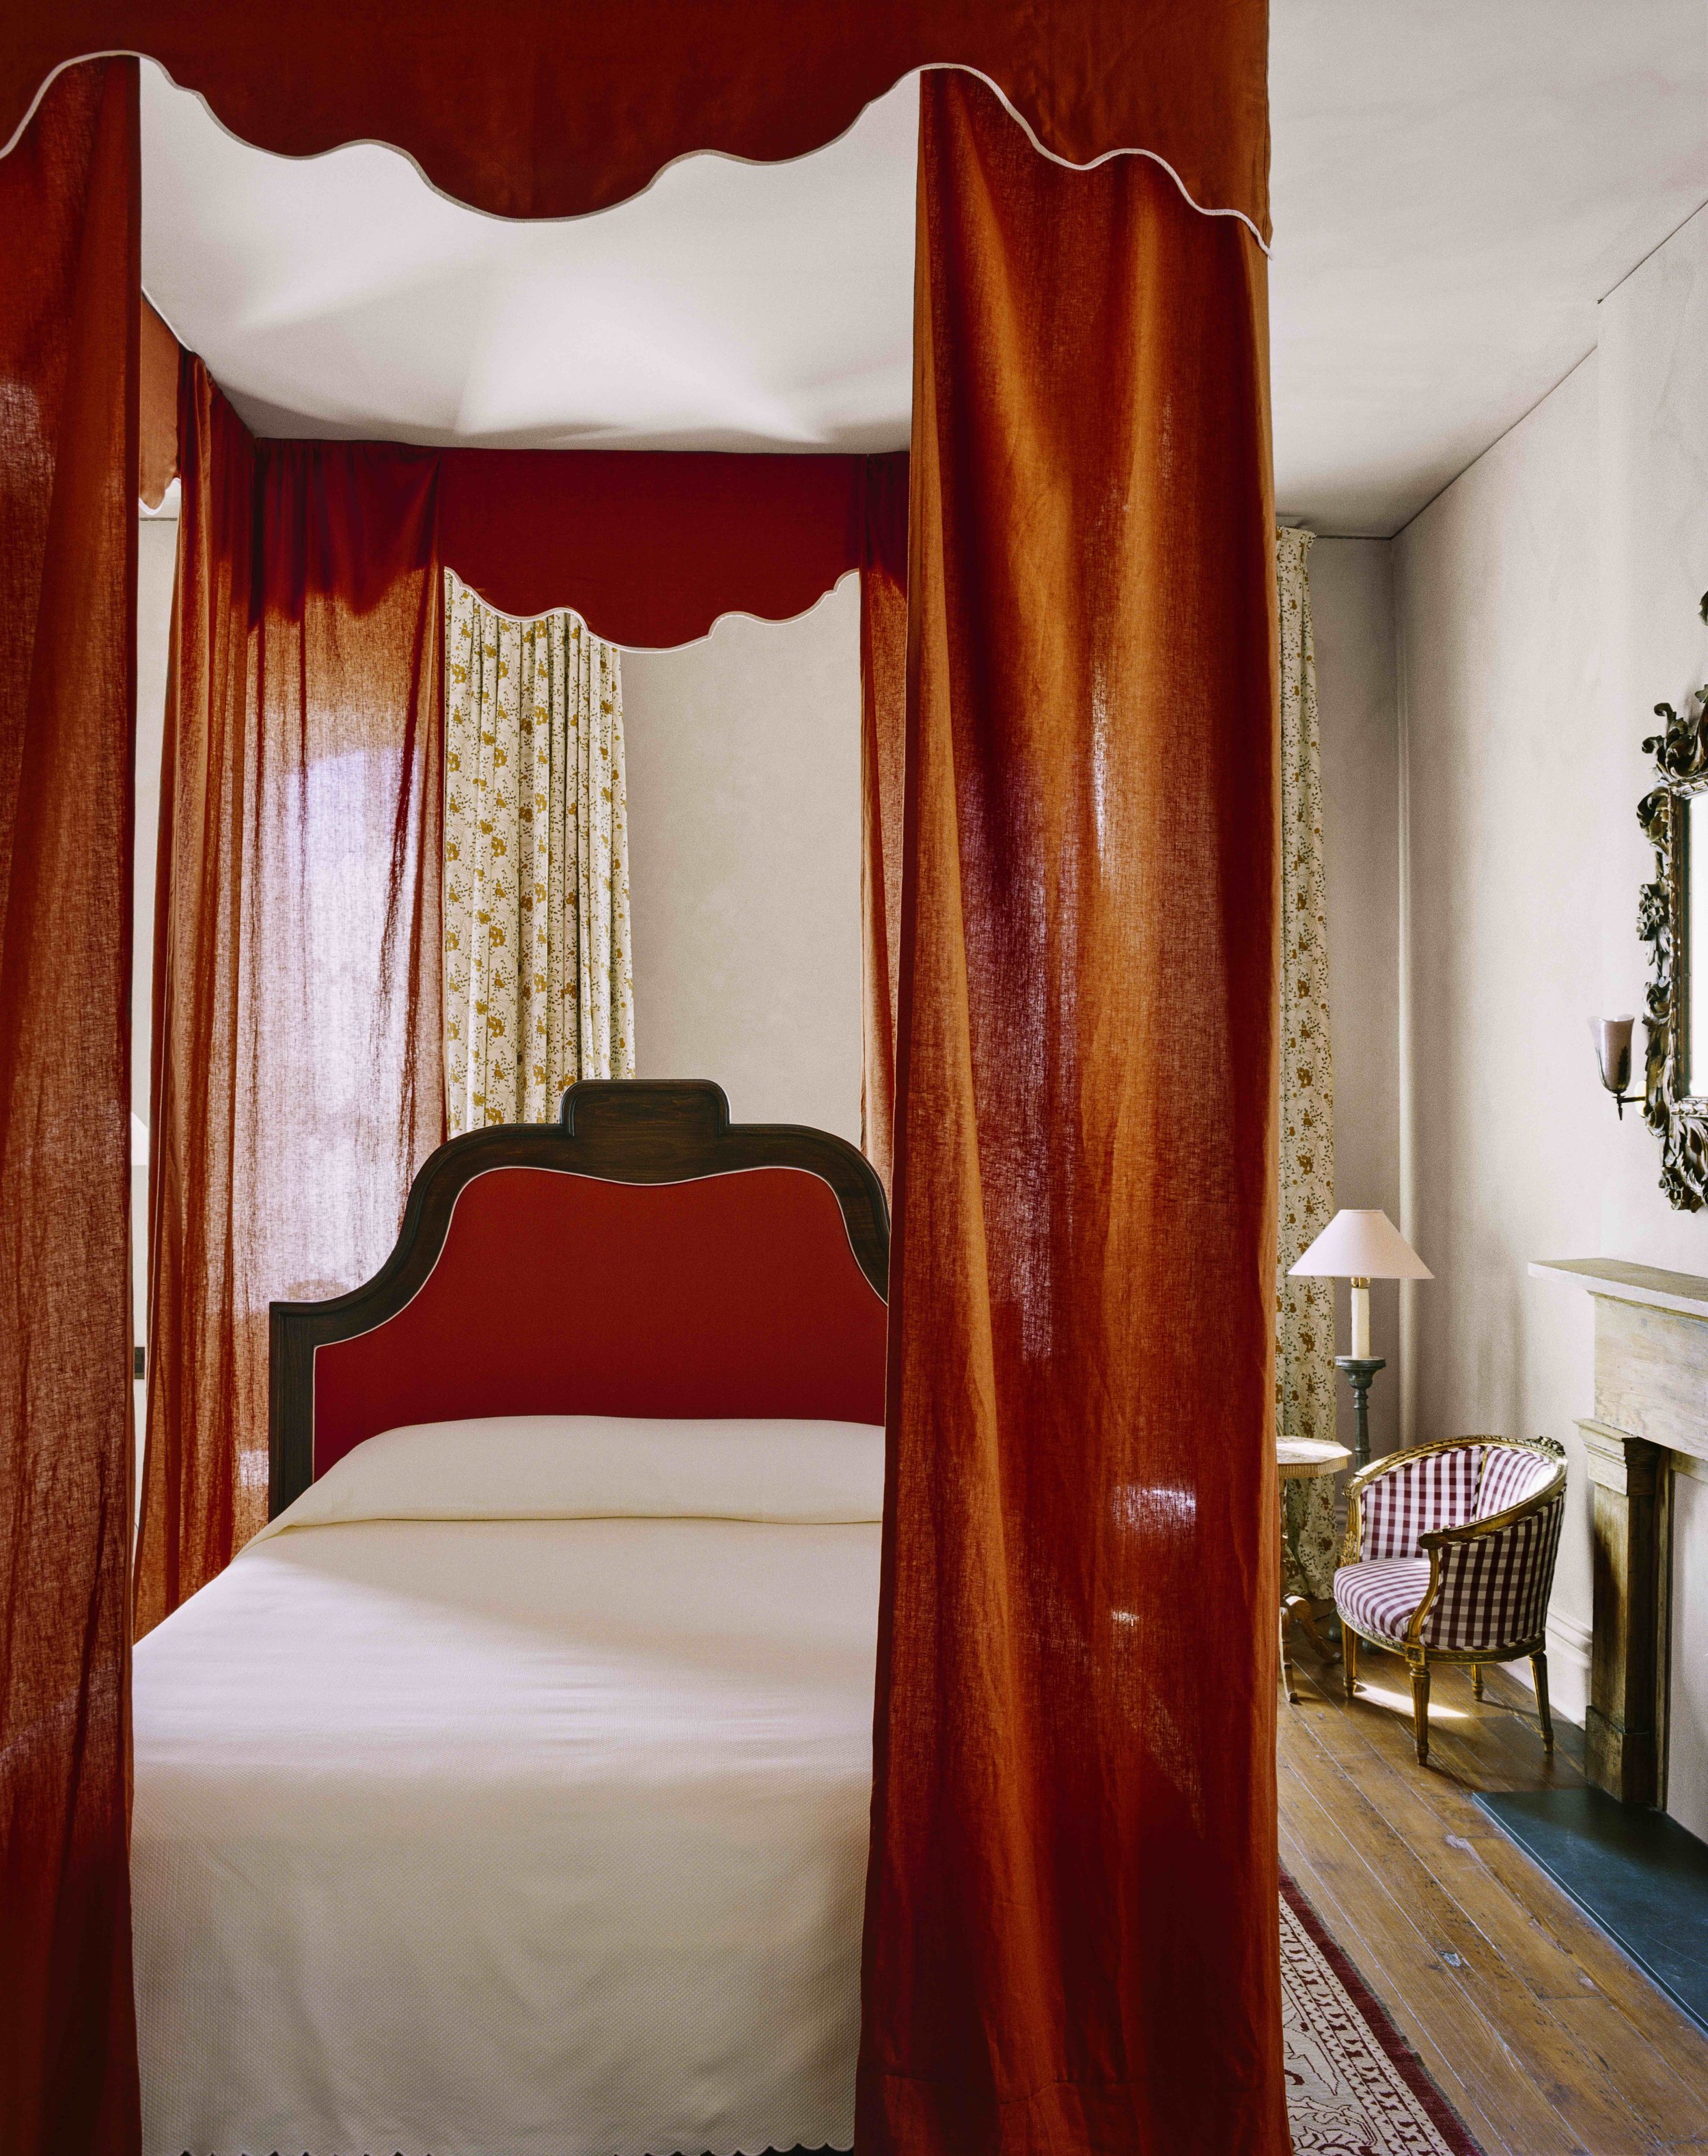 Hotel-Weekend-Barefoot-Luxury-Hotel Peter & Paul, Schoolhouse guest room_(credit Hotel Peter & Paul).jpg